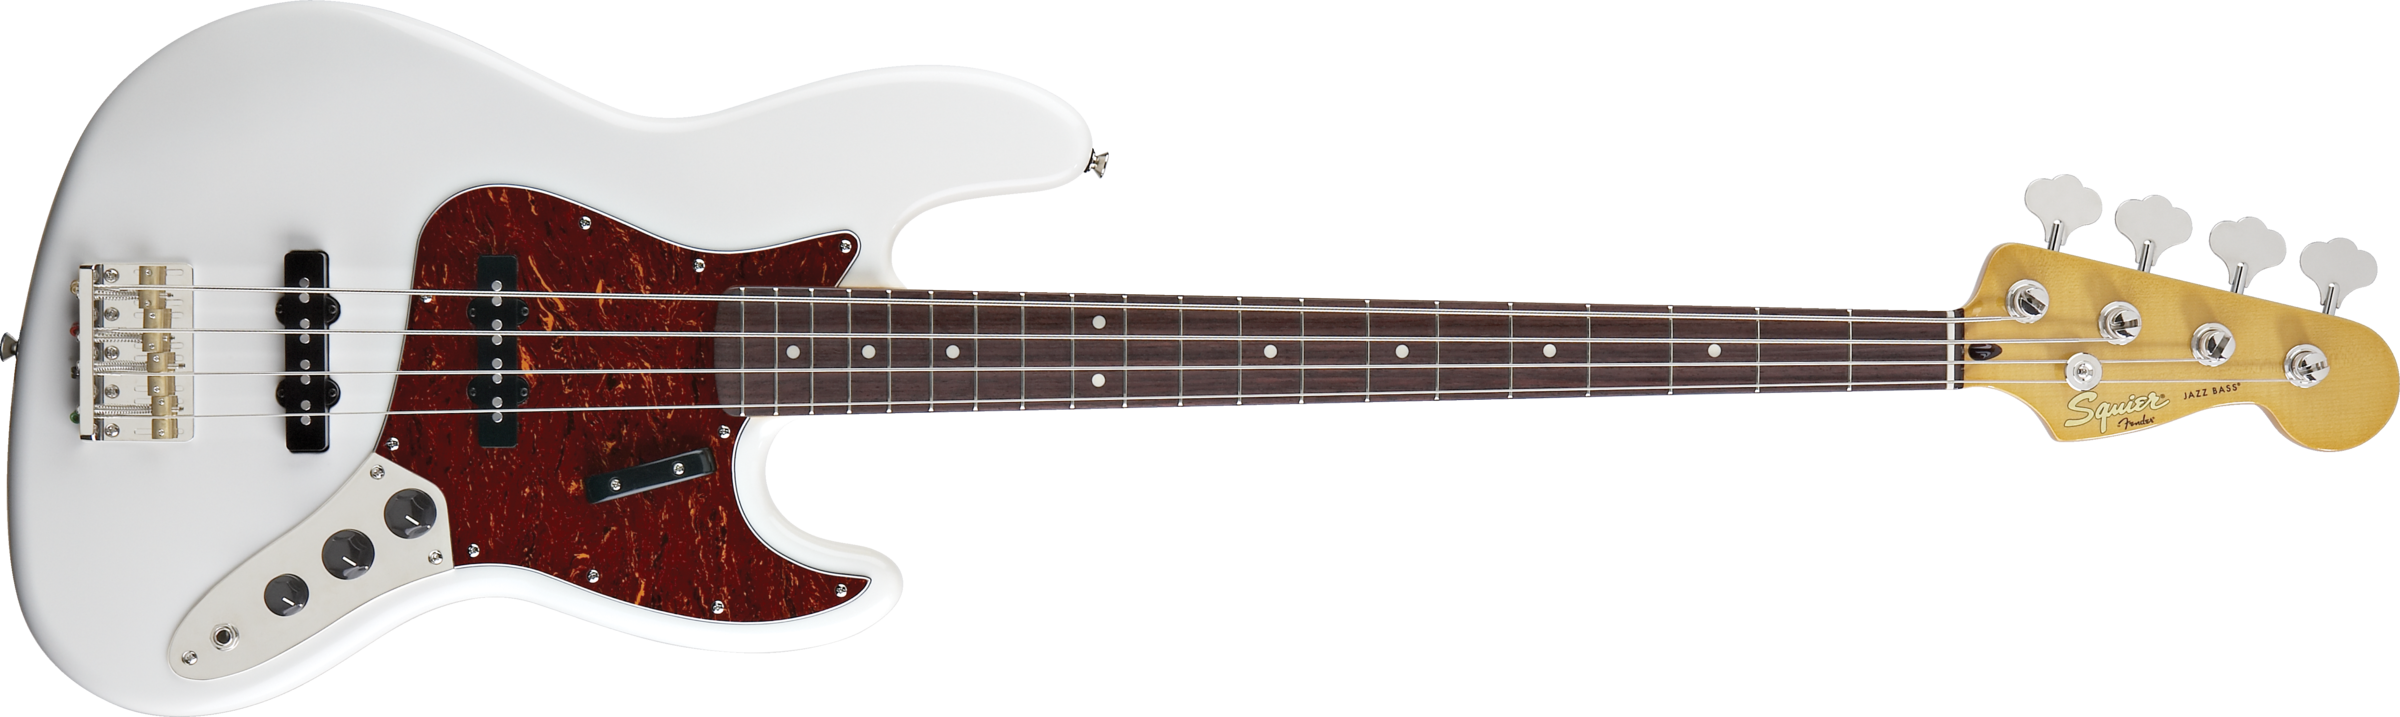 日本限定モデル 美品 Sqwier 60s Jazz Bass - ベース